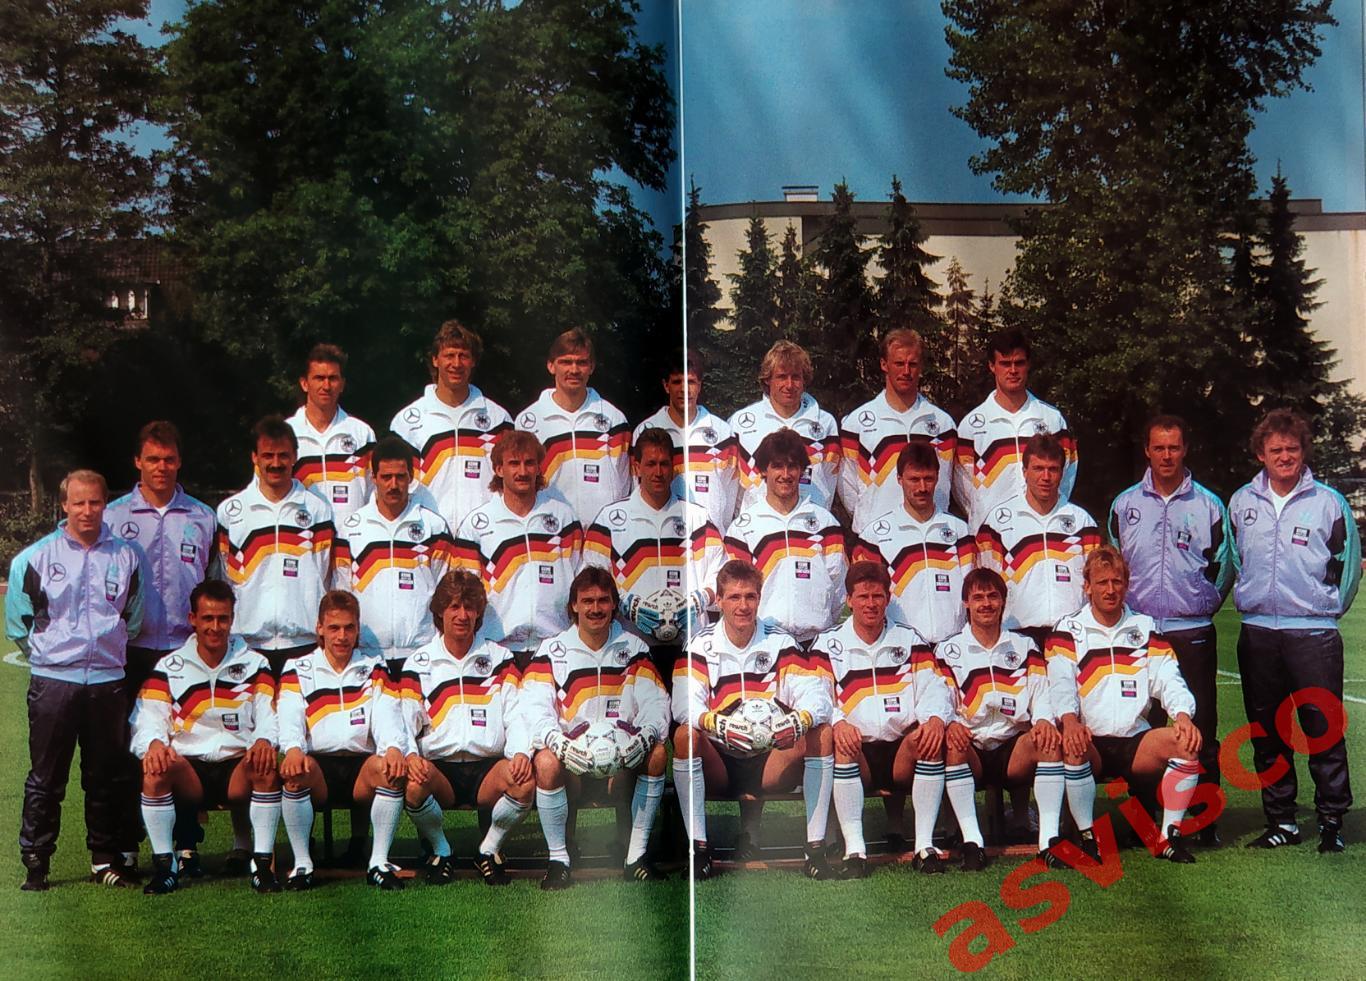 ГЕРМАНИЯ - Чемпион Мира по футболу 1990 года. Итоги ЧМ-90 в Италии. 5